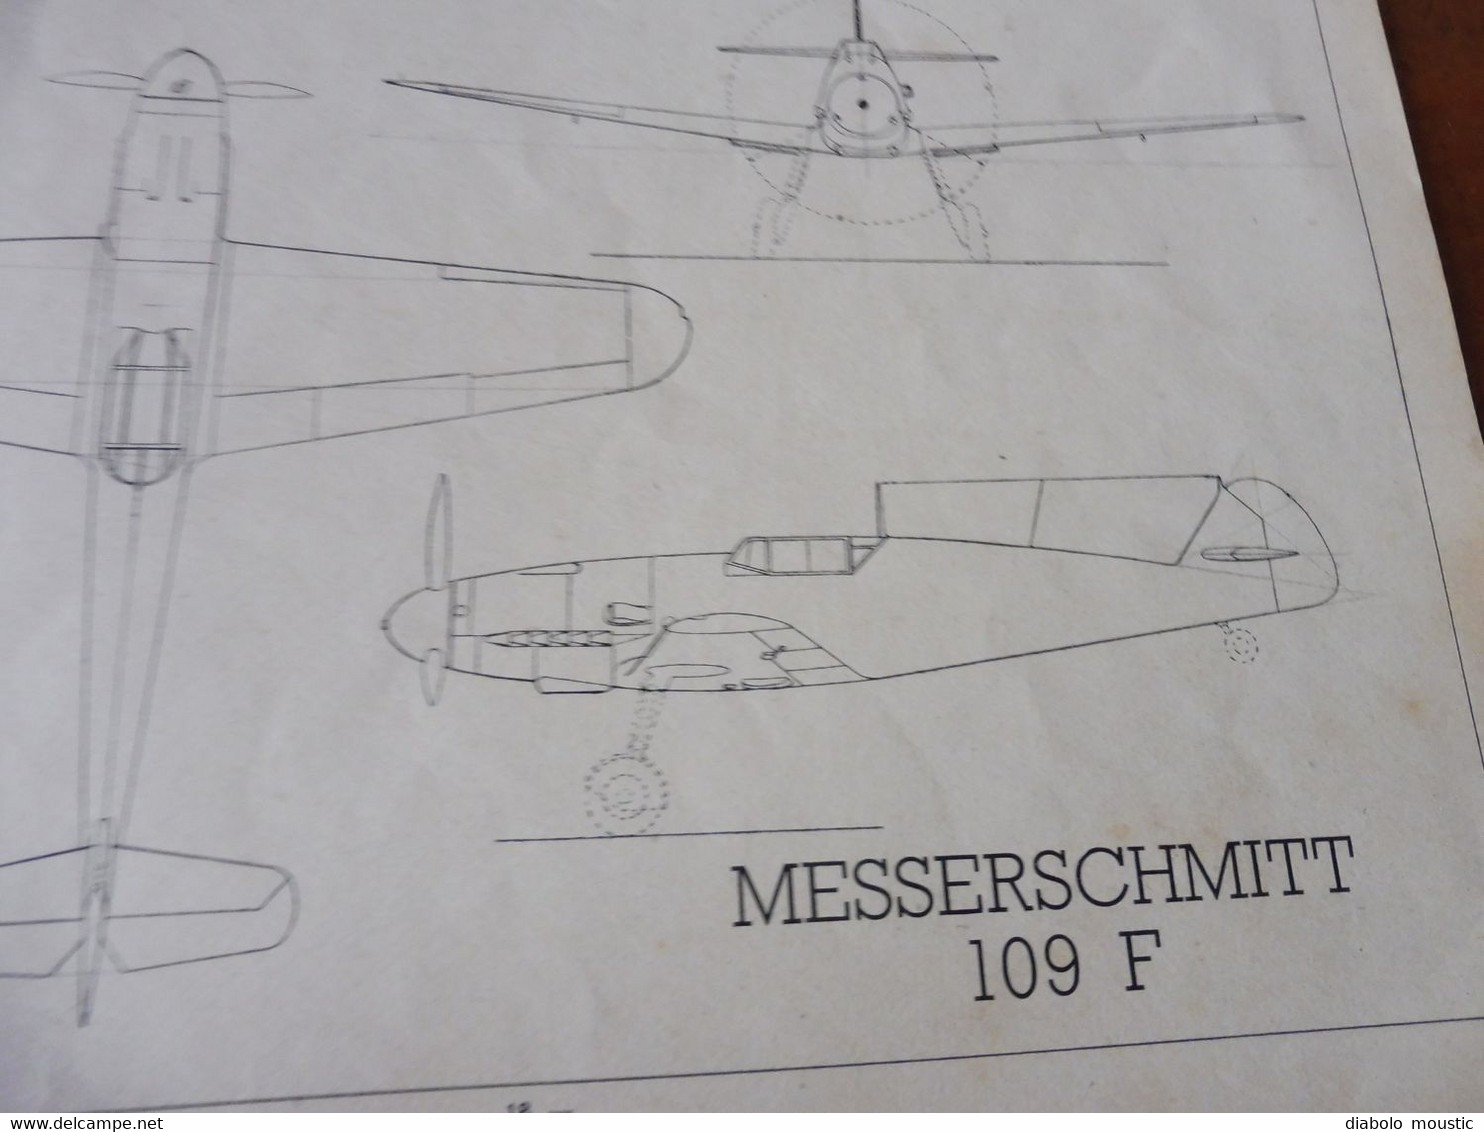 1937 L'AIR ALBUM n° 4 Identification des appareils en vol (Messerschmitt 109F , Junkers JU 90 , Etc